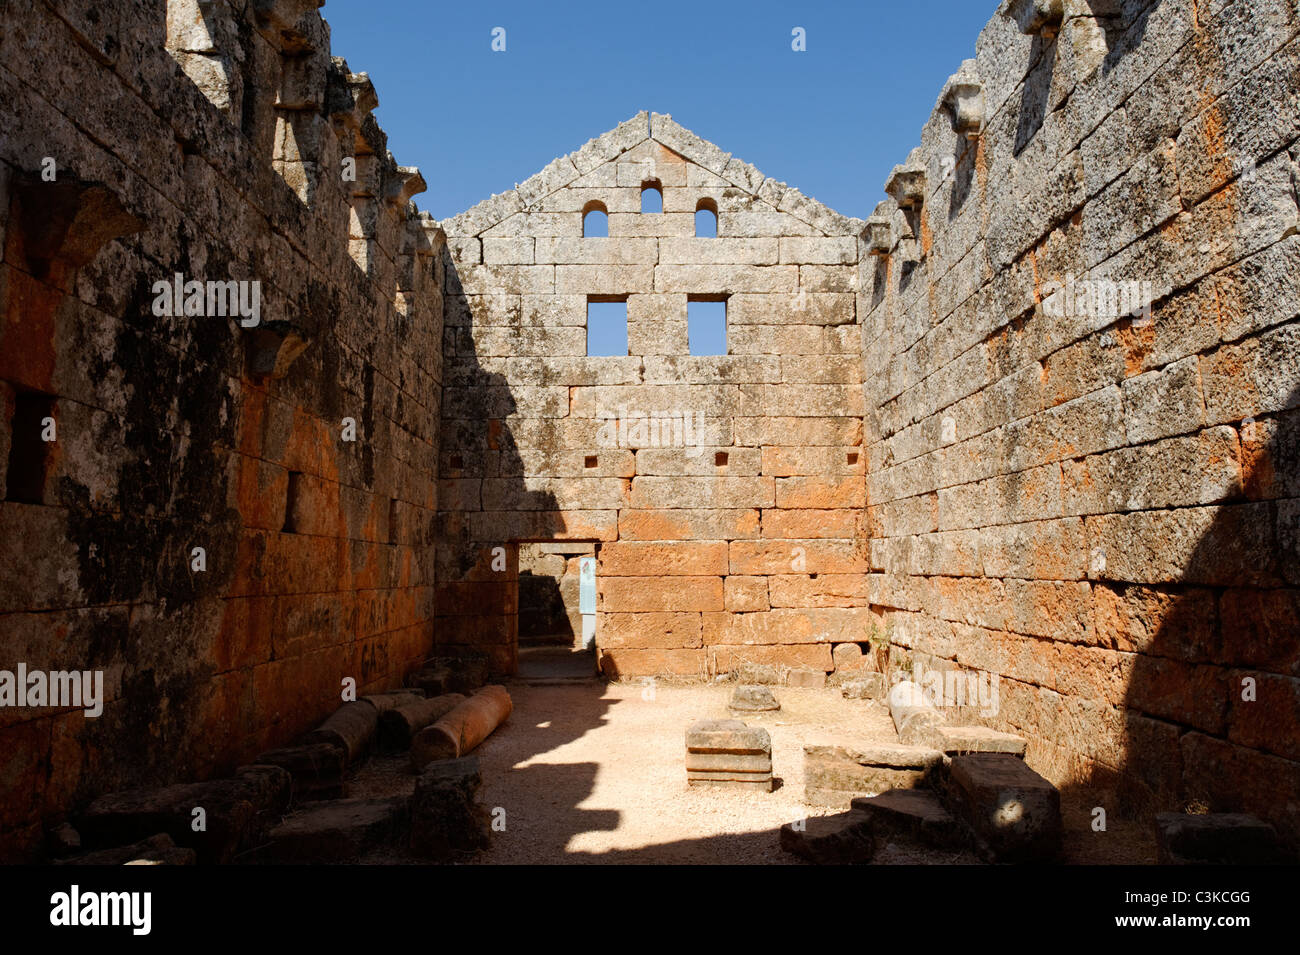 Vue de la salle principale de l'abandon des bains de la ville byzantine de Serjilla morts dans le nord-ouest de la Syrie. Banque D'Images